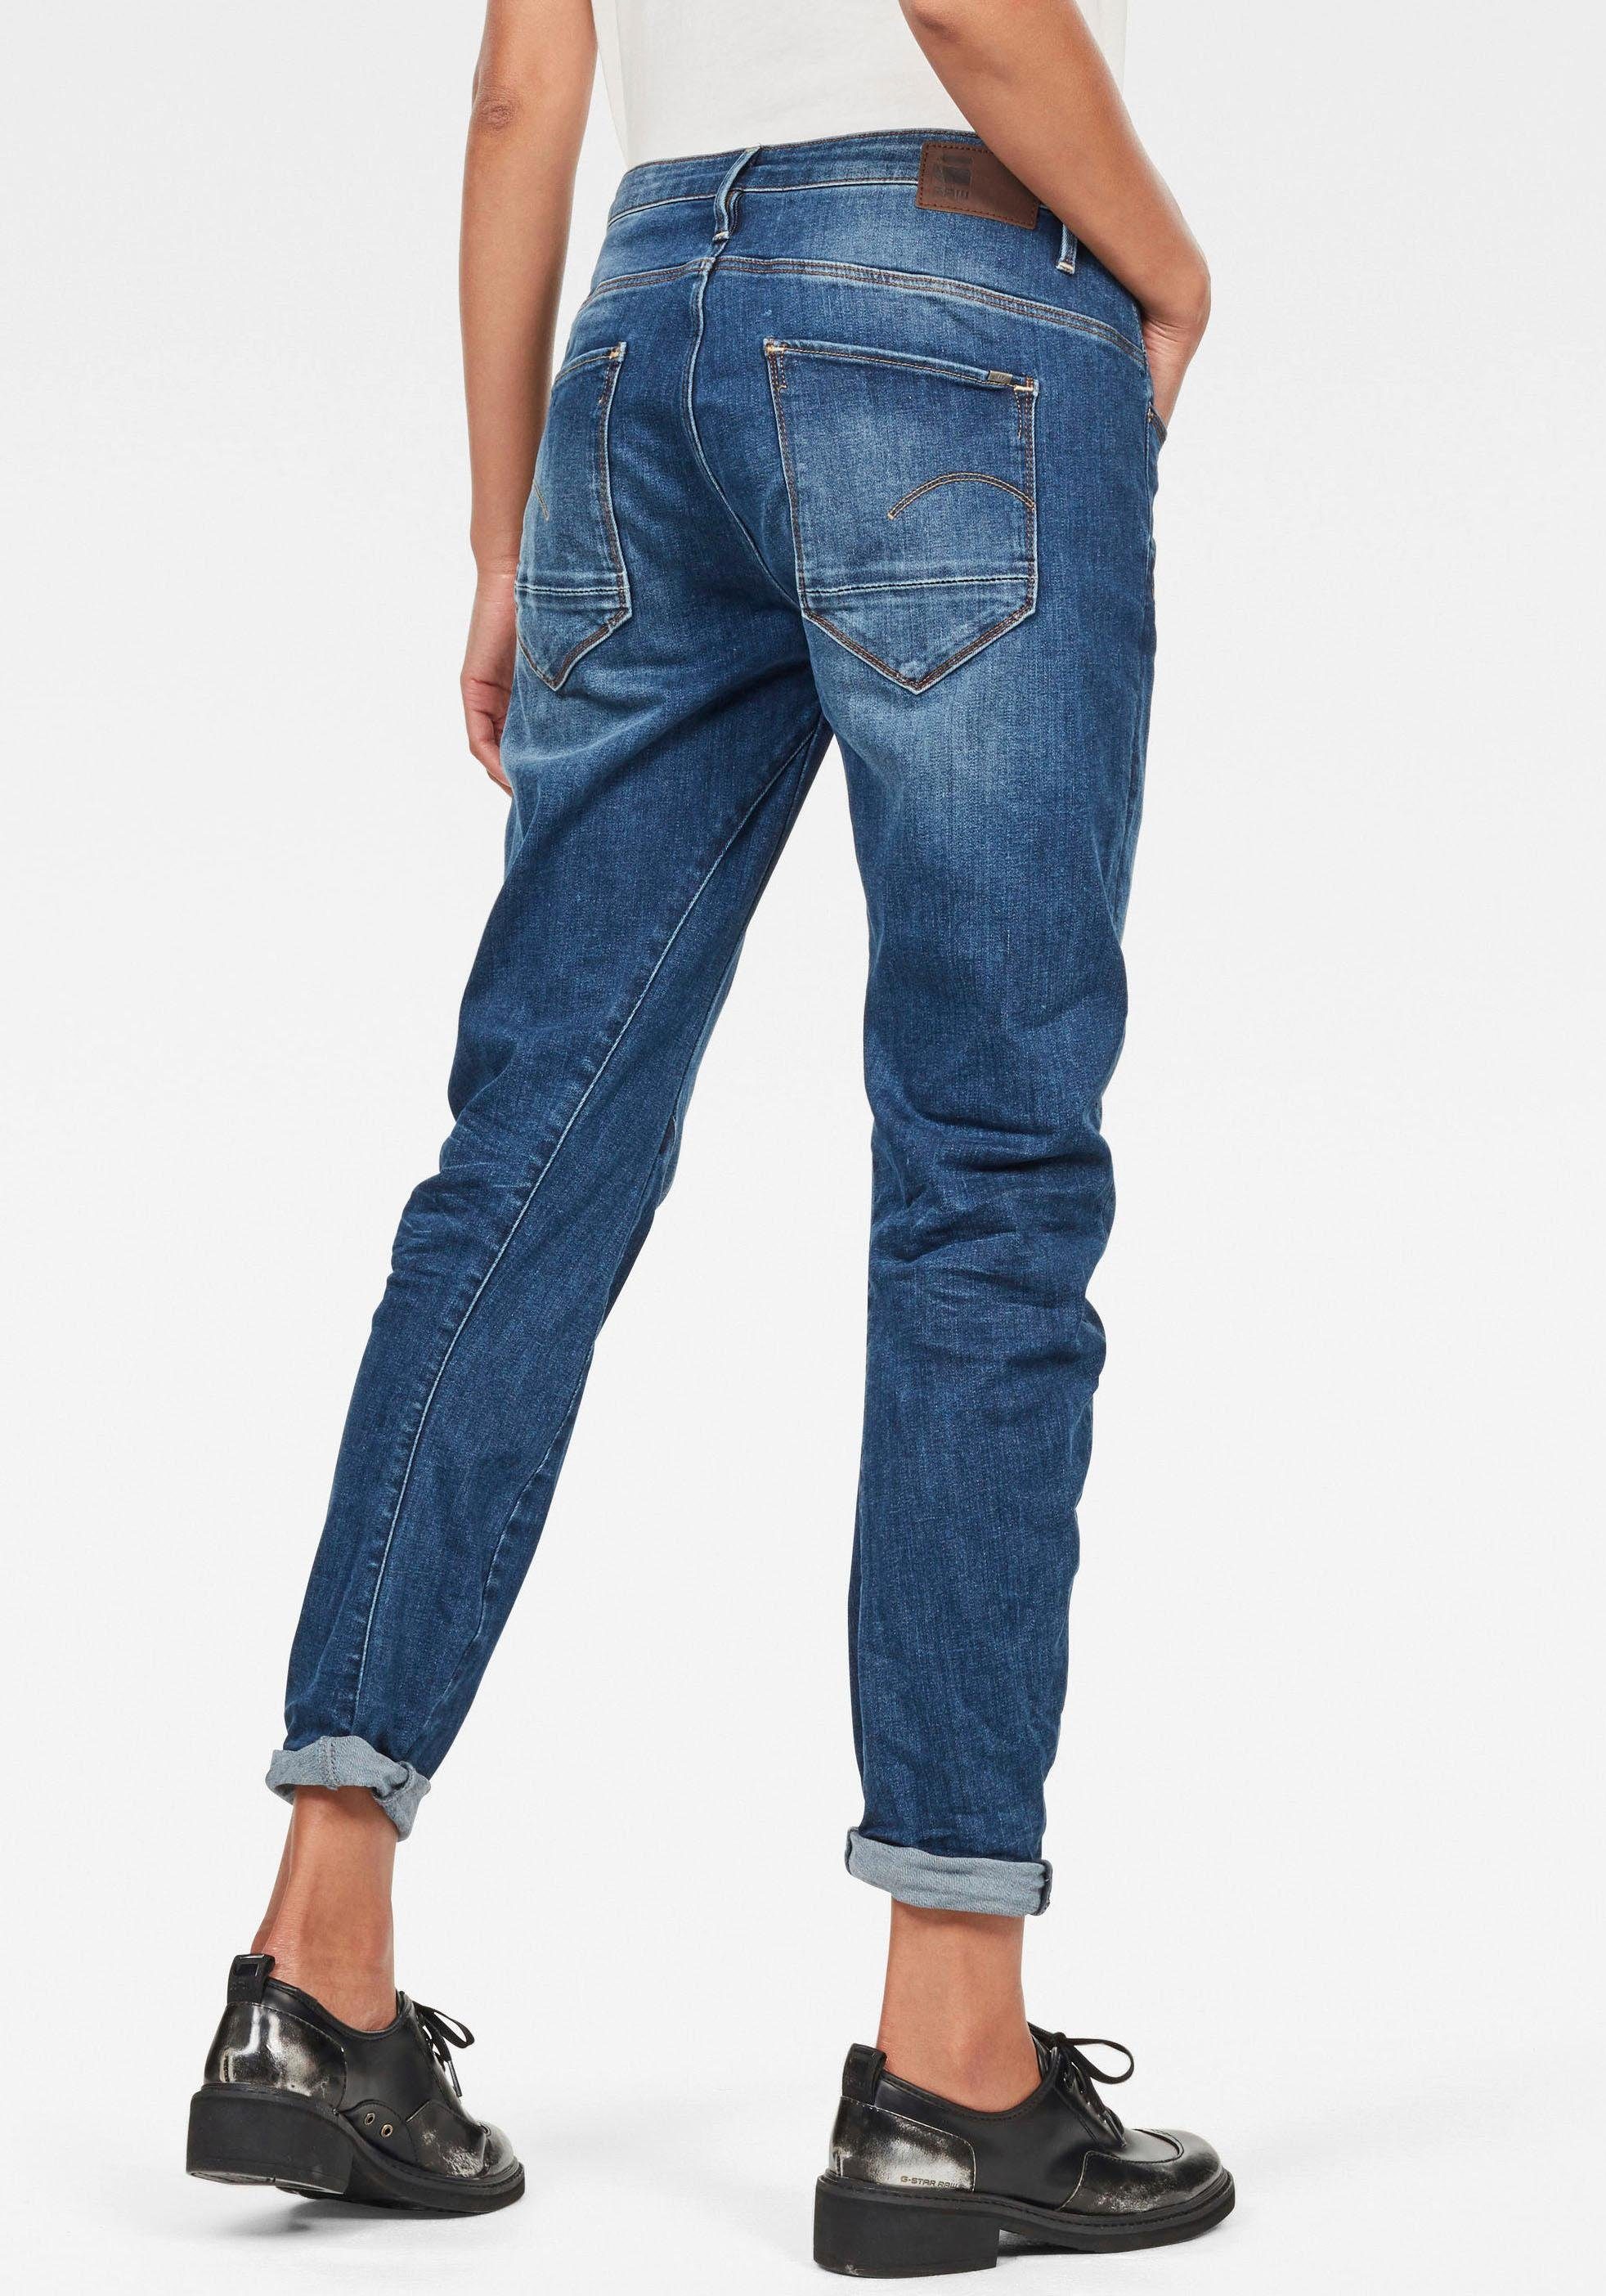 Boyfriend-Jeans für Damen » Lässiges Must Have 2020 | OTTO